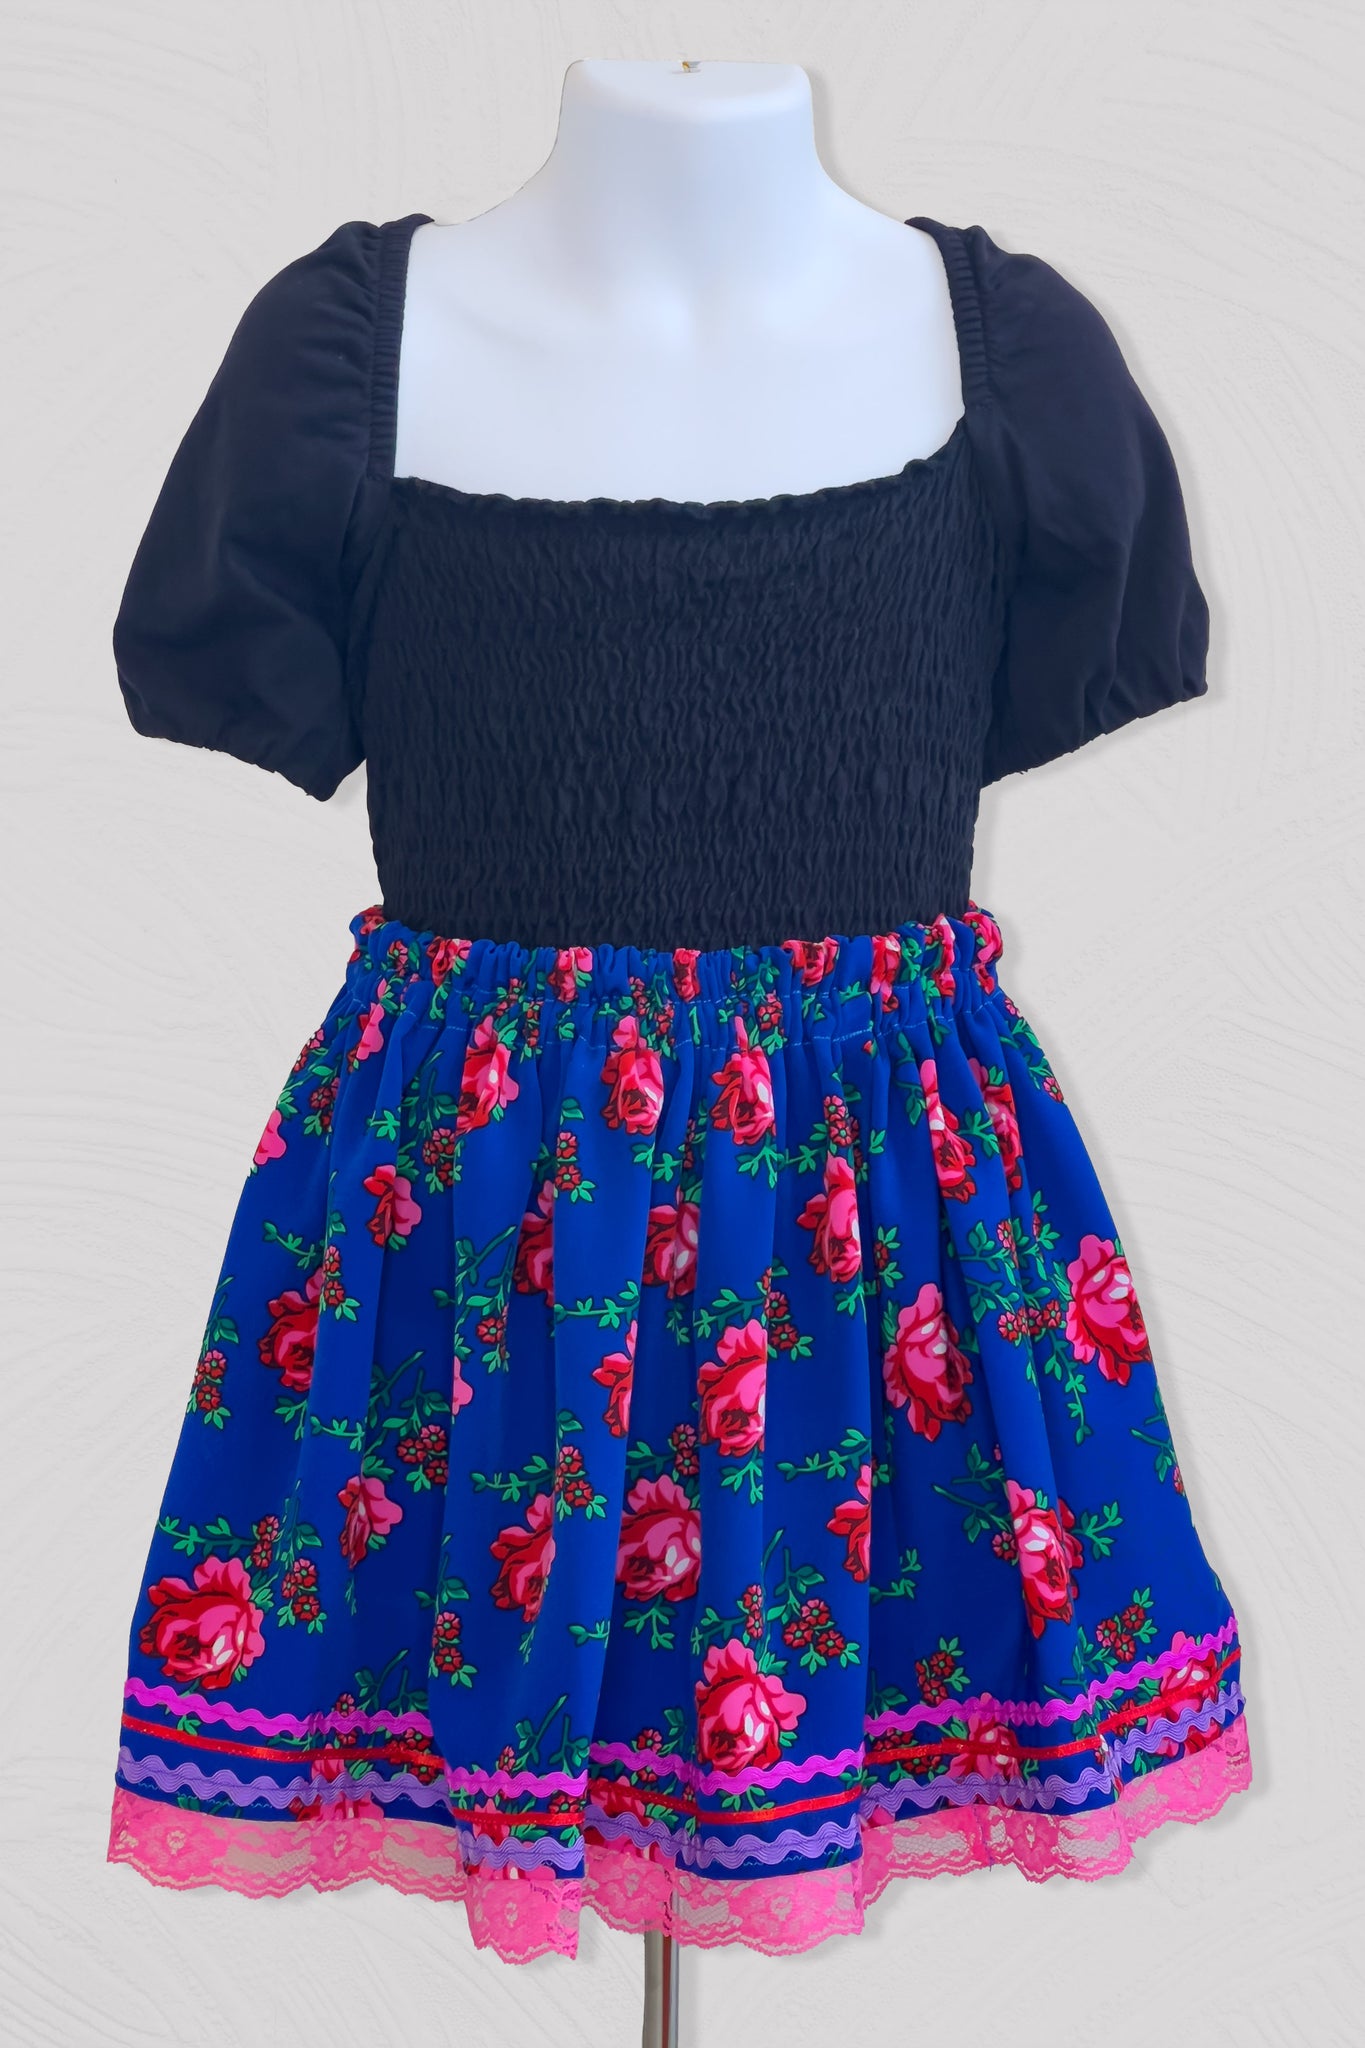 Blue Girl's Skirt Size 2T